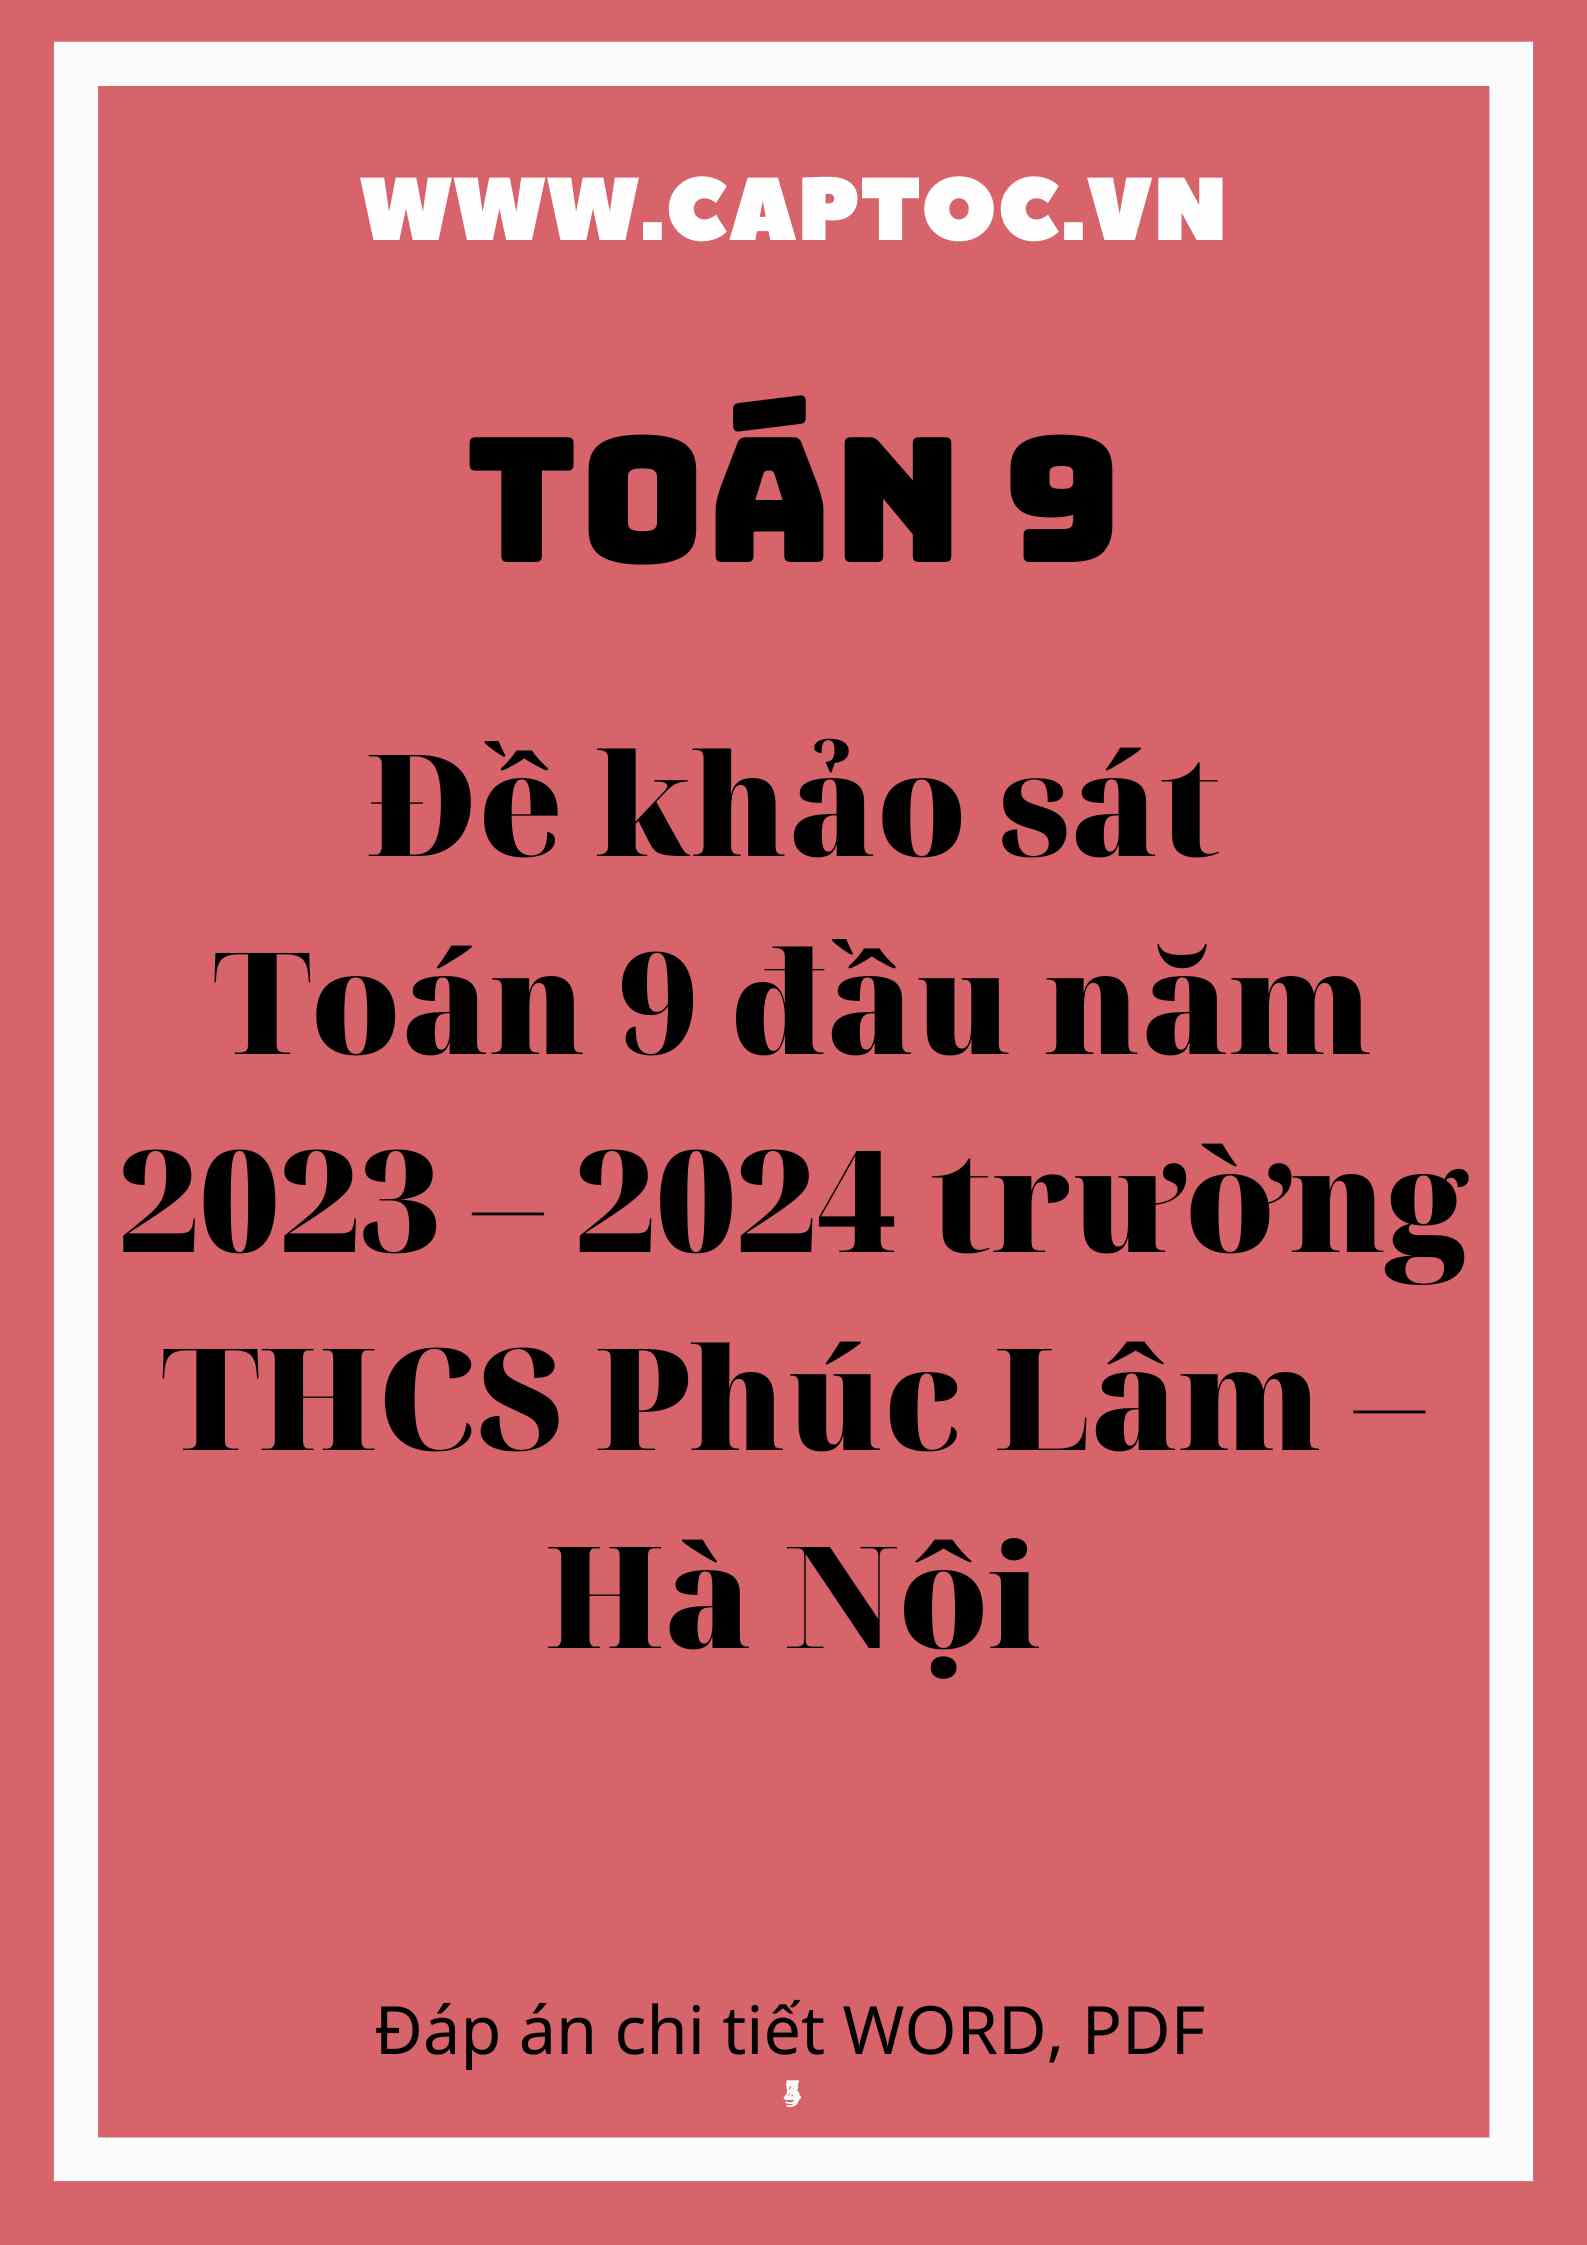 Đề khảo sát Toán 9 đầu năm 2023 – 2024 trường THCS Phúc Lâm – Hà Nội